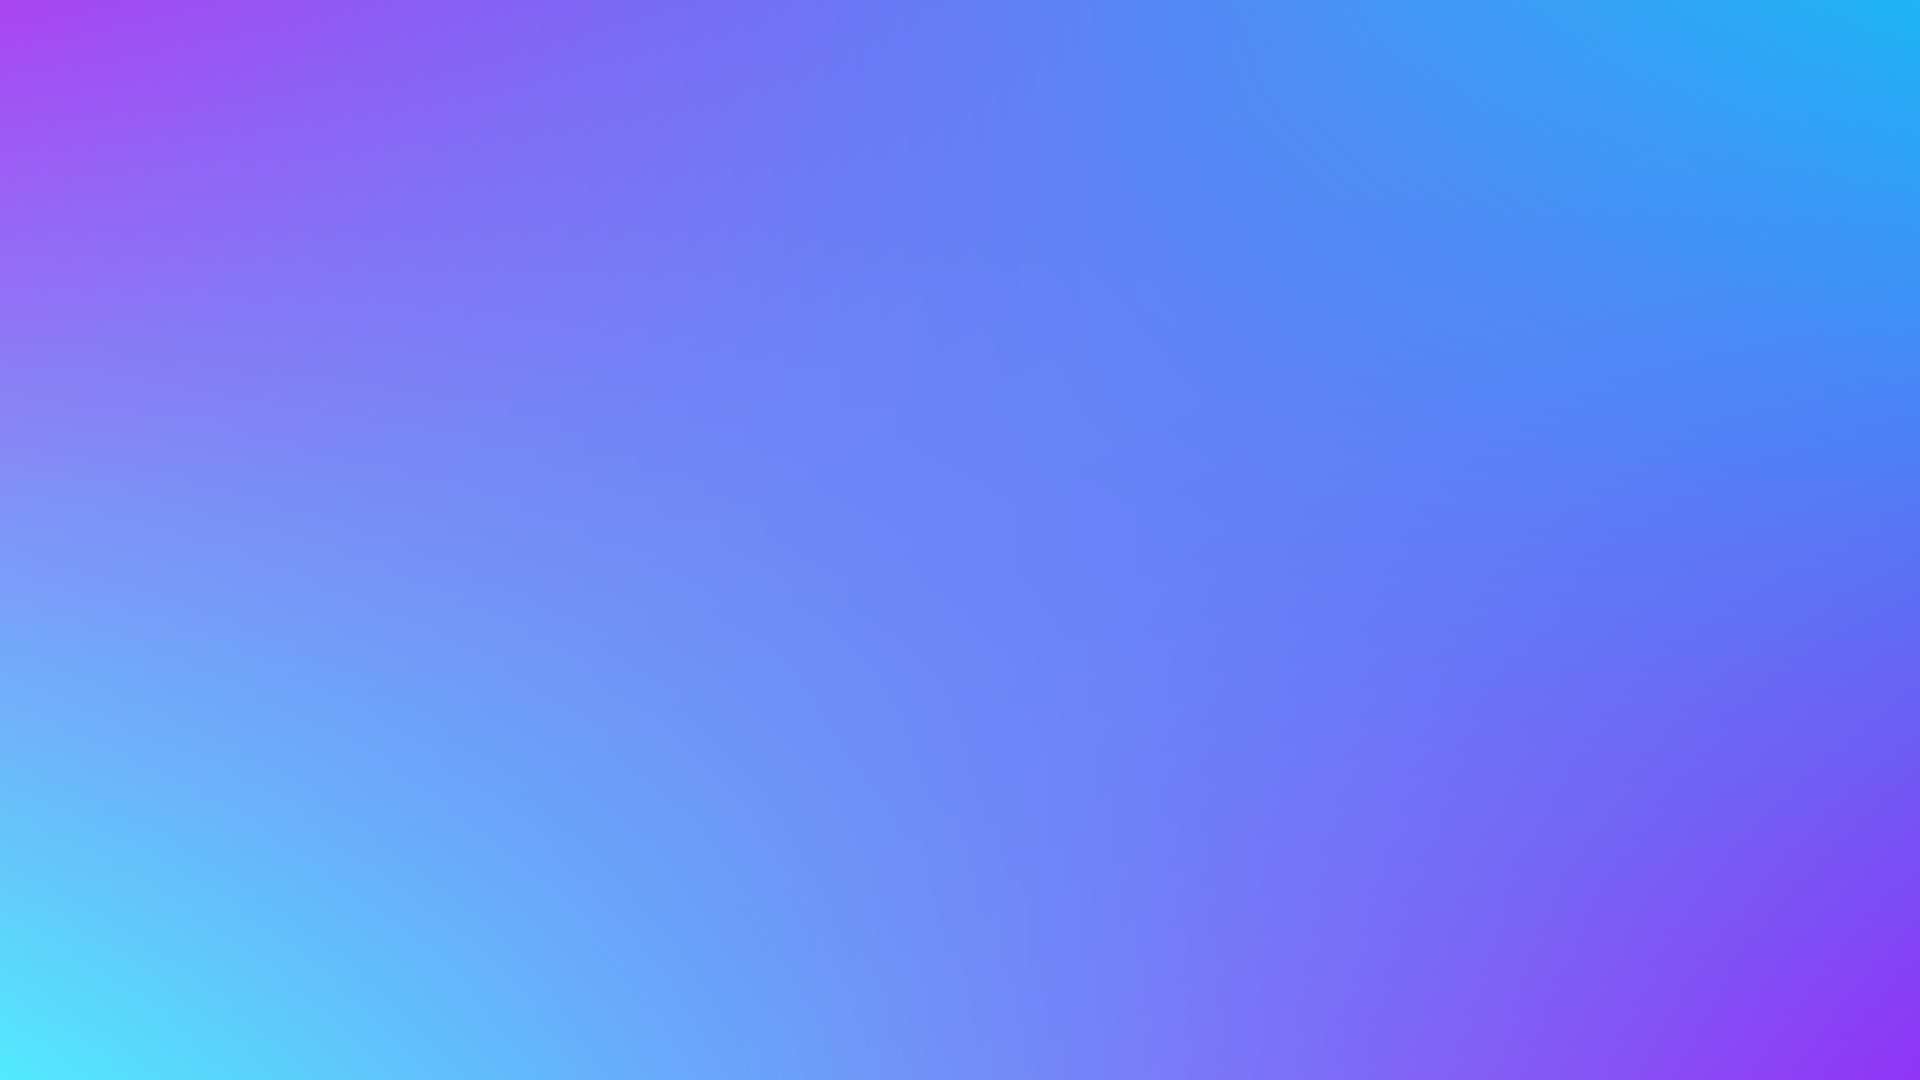 Light Blue and Purple Gradient Background: Nền Gradient xanh light và tím tưởng chừng đơn giản nhưng lại mang một vẻ đẹp tinh tế và hiện đại. Hãy cùng xem bức ảnh này để tận hưởng một màn hình đẹp đến nỗi chúng ta không muốn rời mắt ra.